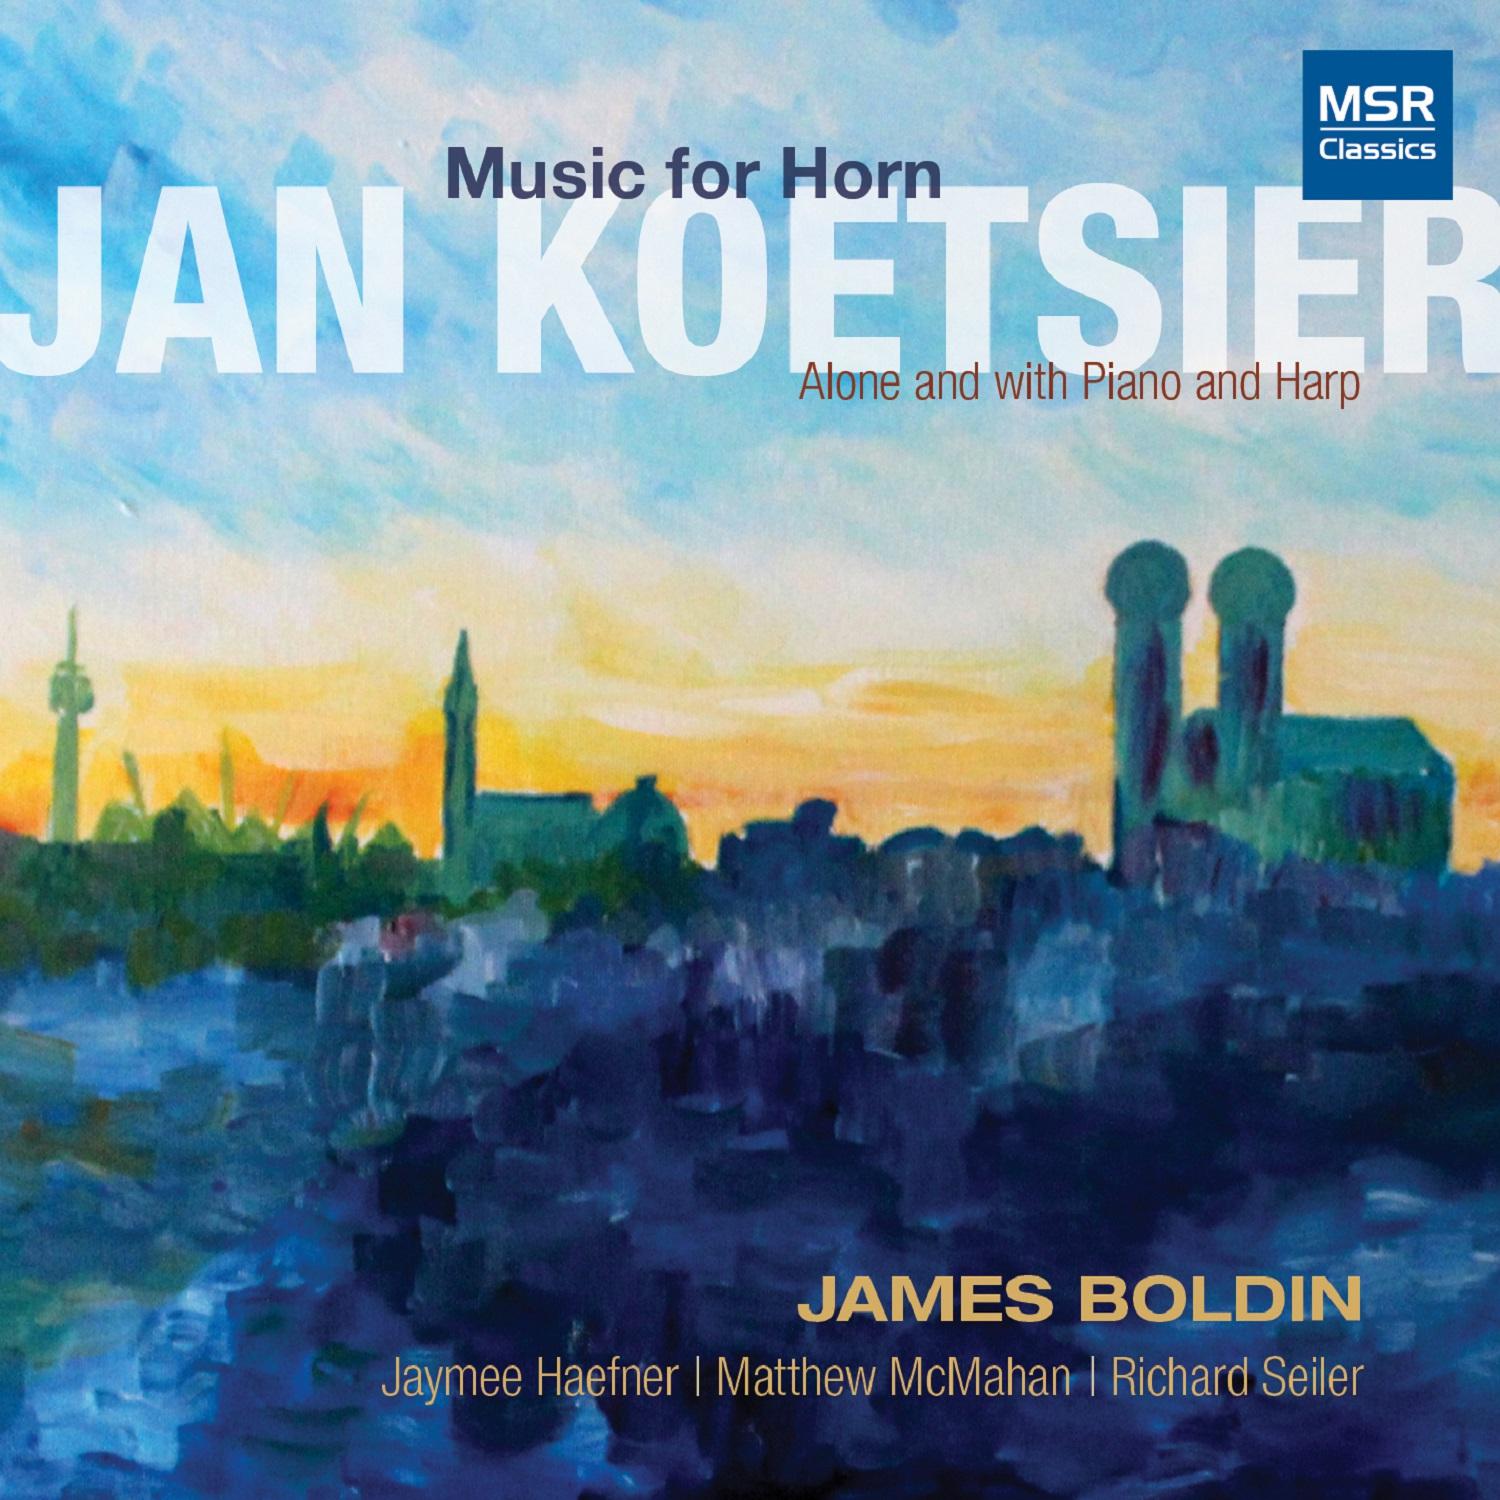 James Boldin - Sonata for Horn and Harp, Op. 94: I. Allegro